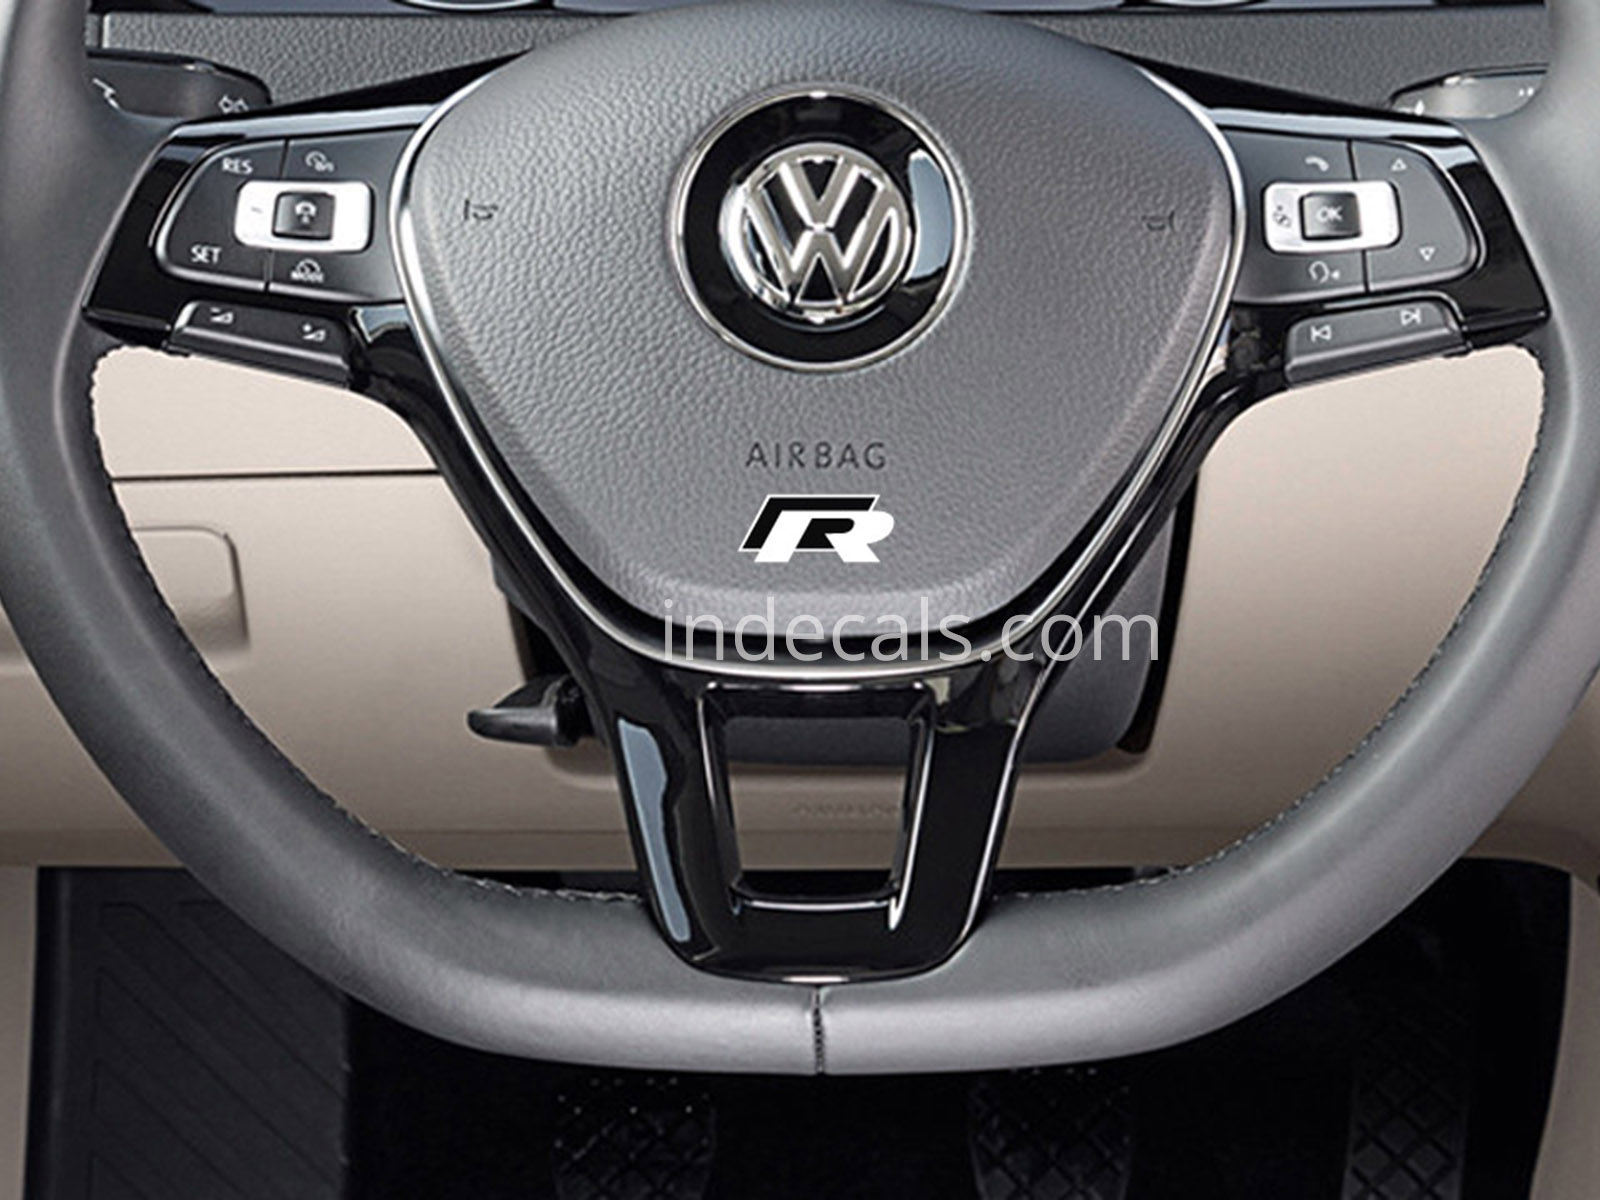 2 x Volkswagen R-Line stickers for Steering Wheel